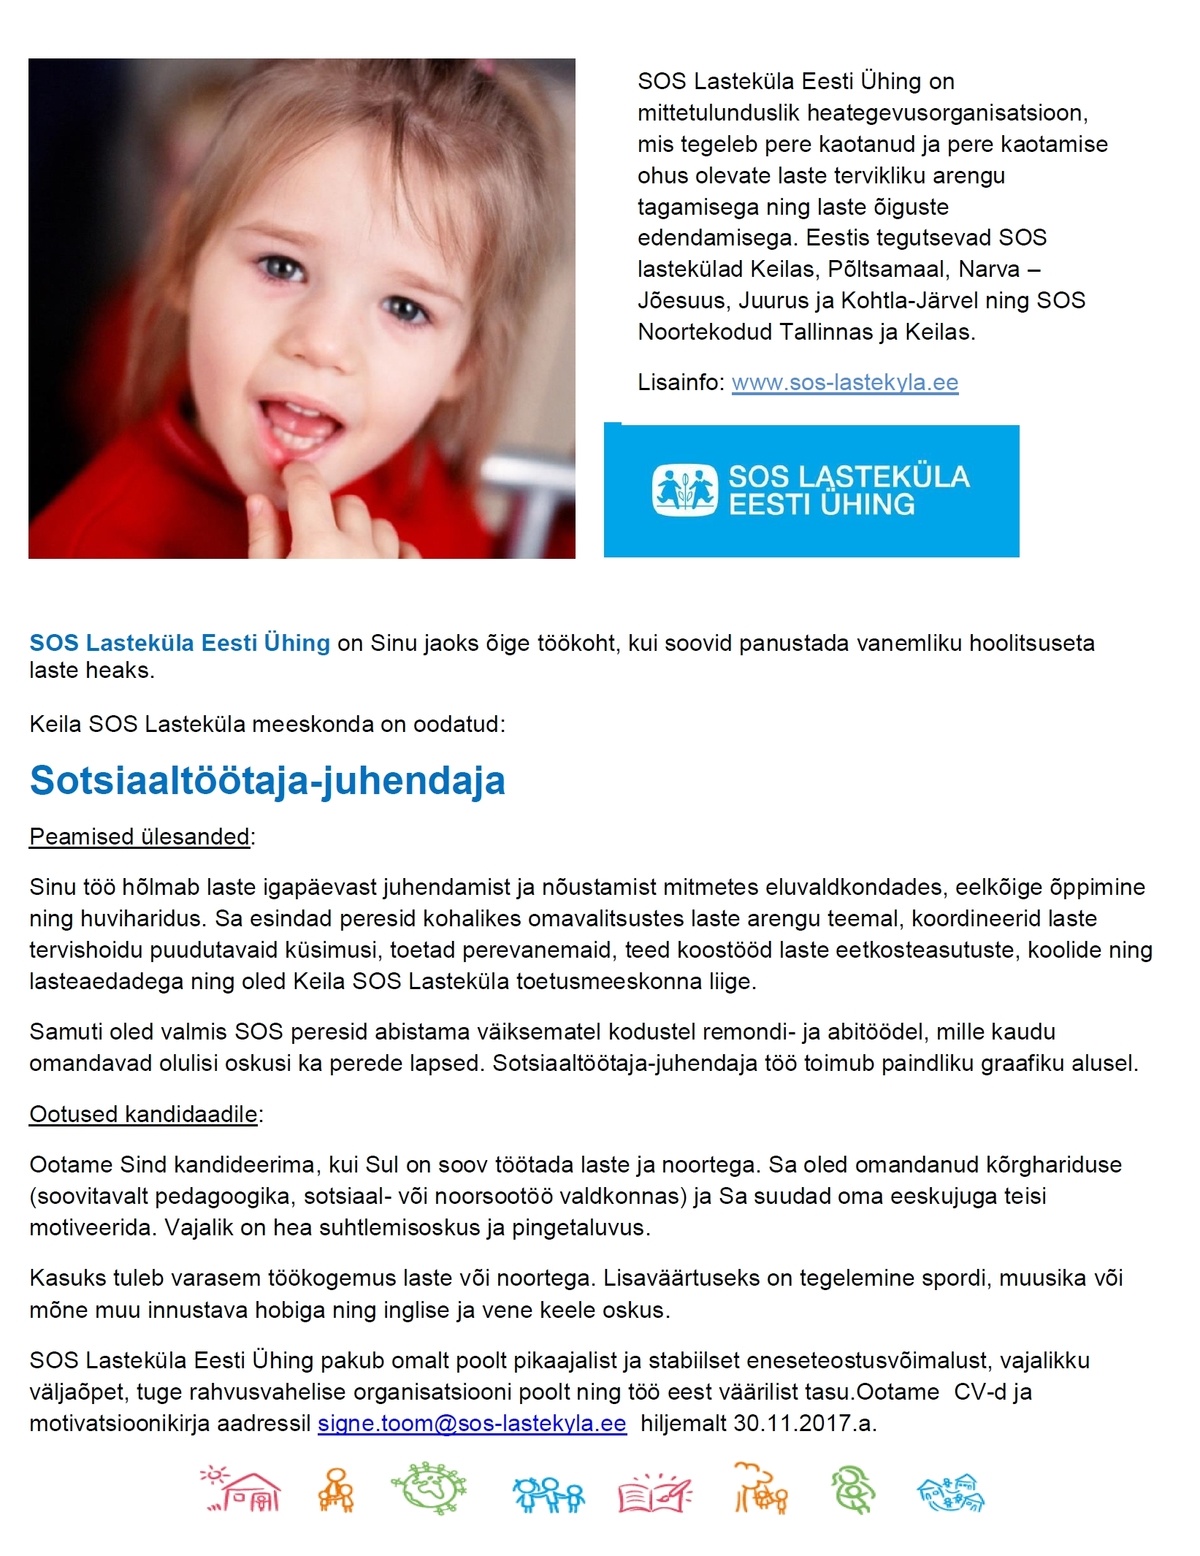 SOS Lasteküla Eesti Ühing Sotsiaaltöötaja-Juhendaja